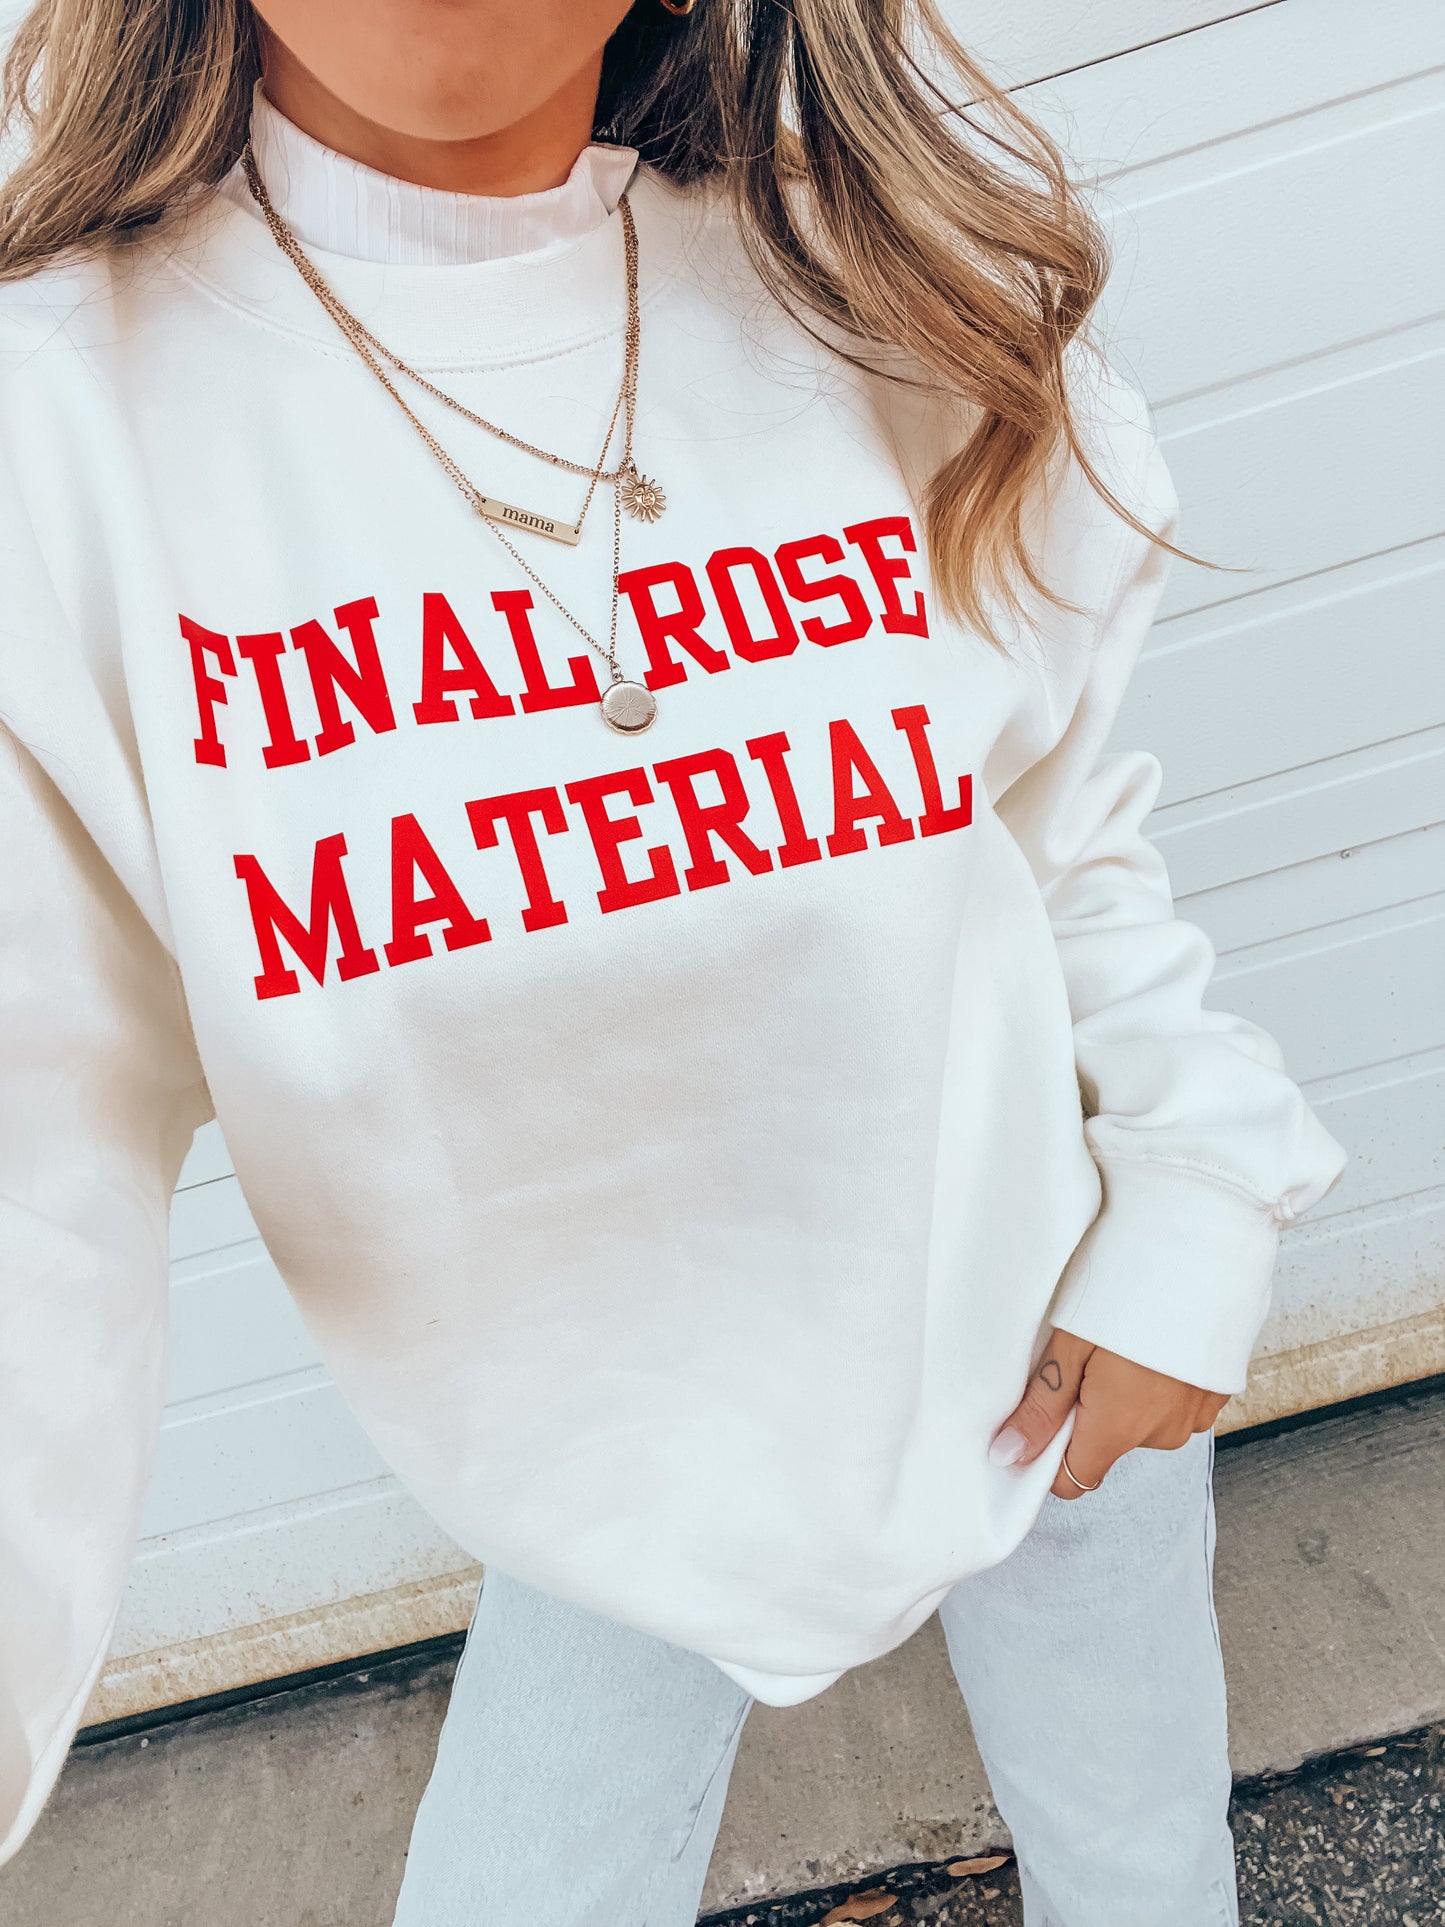 Final Rose Material (Red) - Sweatshirt (Creme)